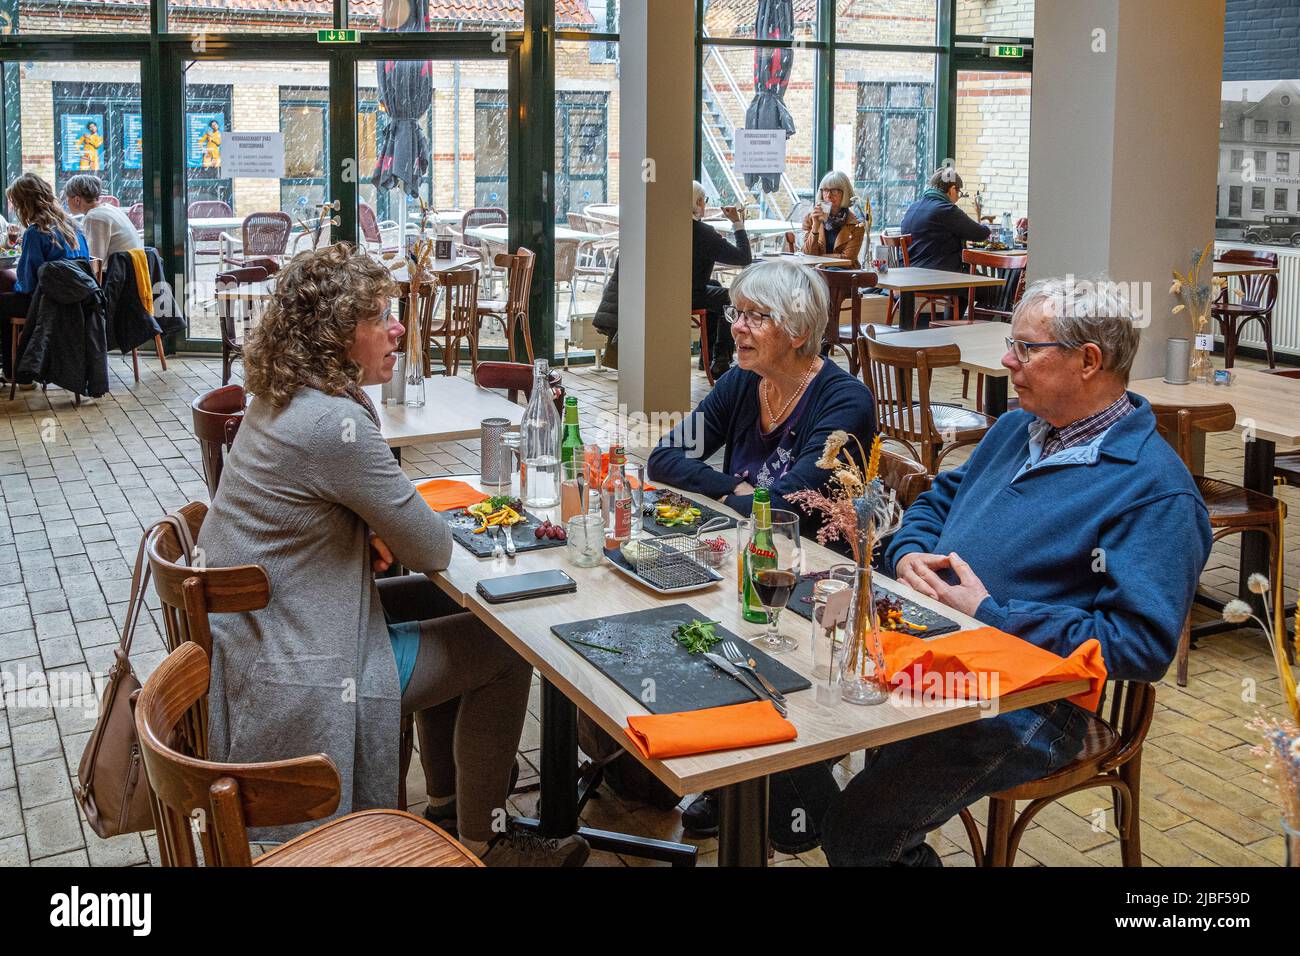 Ein älteres dänisches Paar sitzt an einem Restauranttisch mit einem Mädchen, das sich unterhielt, während es auf die Gerichte wartete. Assens, Dänemark, Europa Stockfoto